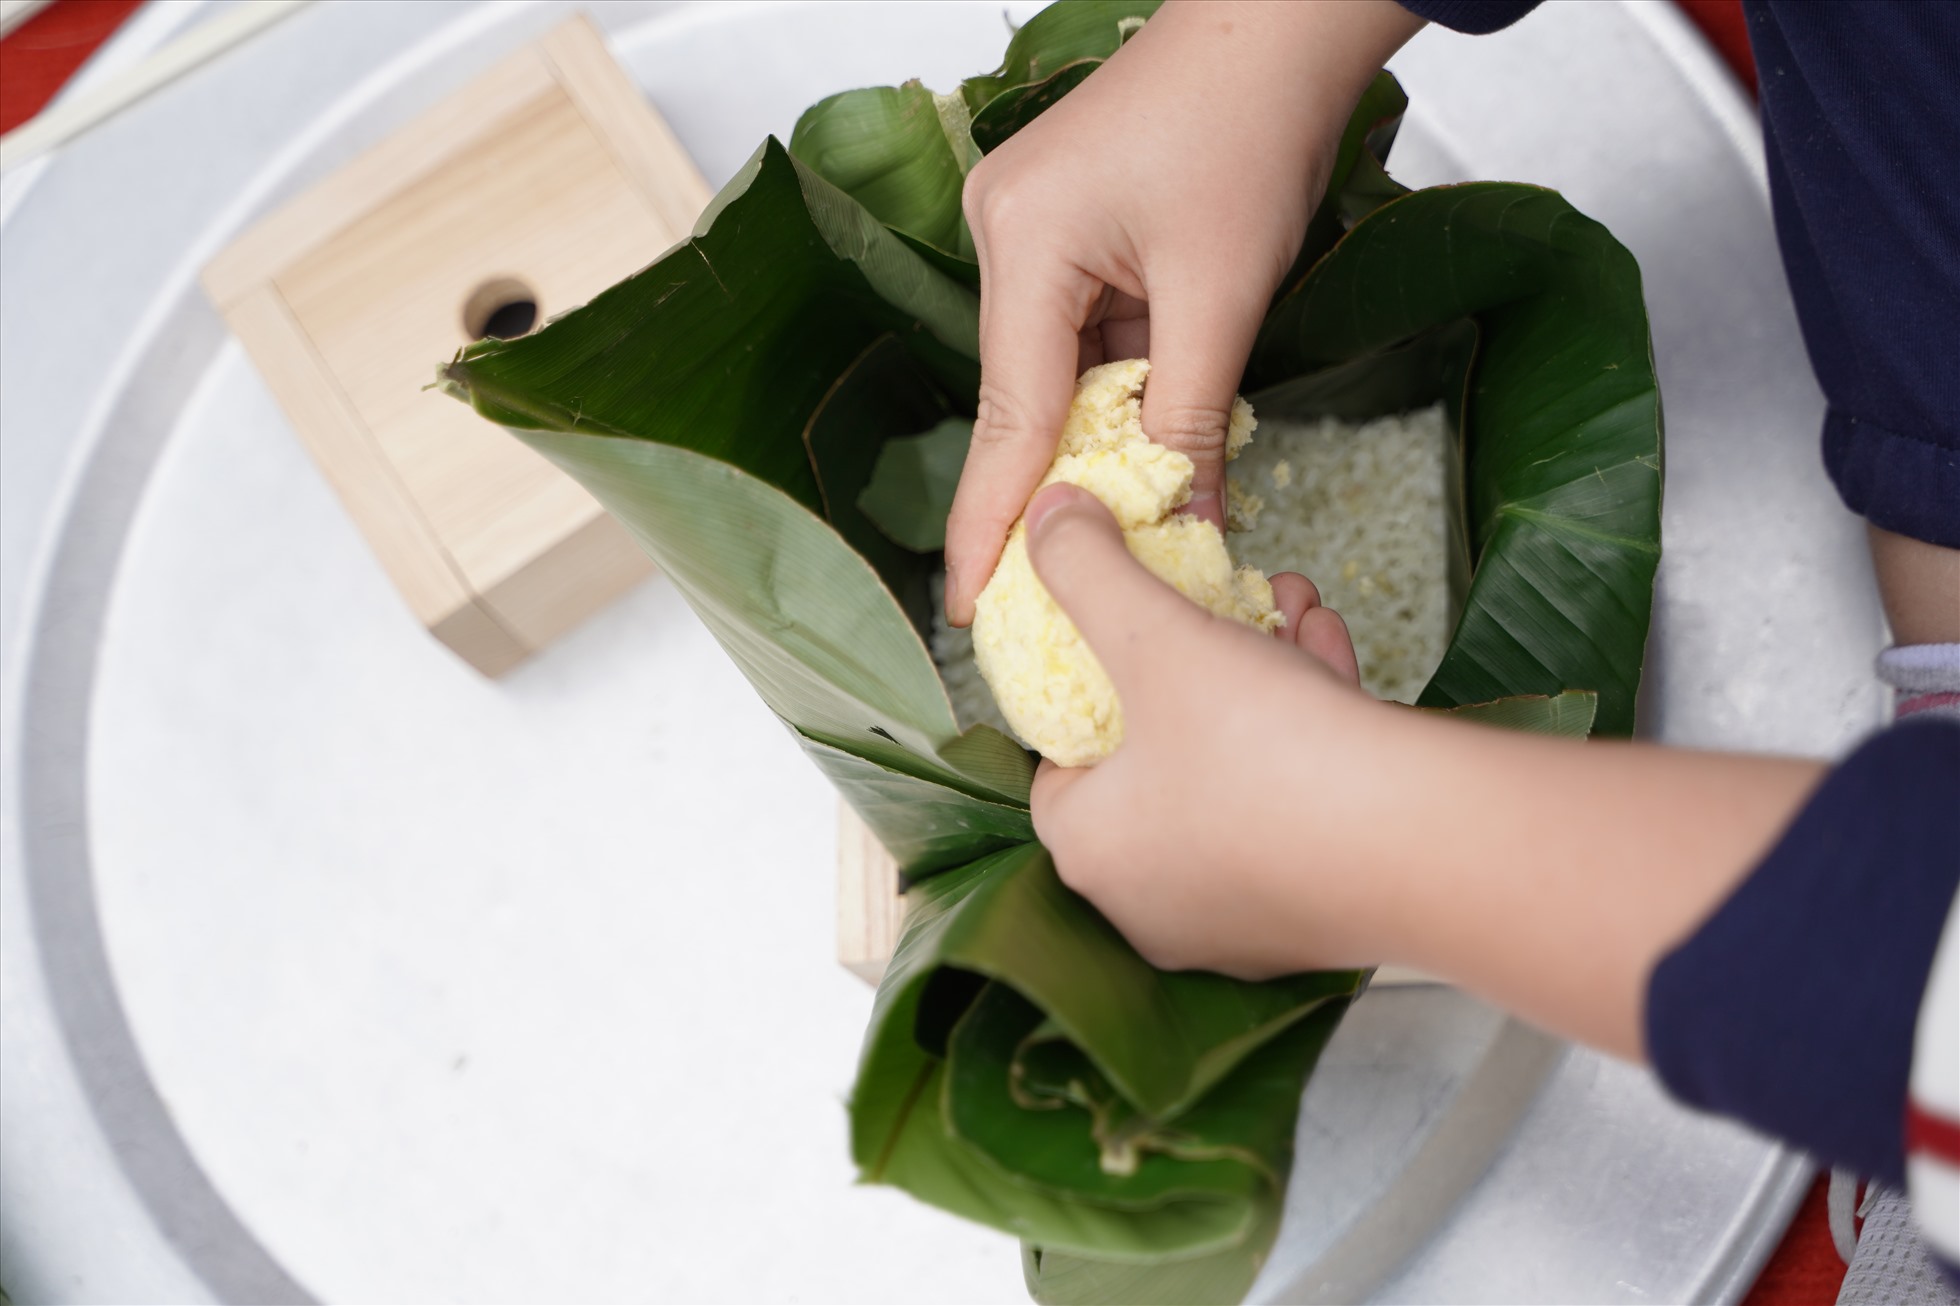 Các em học sinh được tự tay chuẩn bị lá, đổ gạo, đỗ, thịt và khéo léo gói thành chiếc bánh nhỏ xinh. Ảnh: Vân Trang